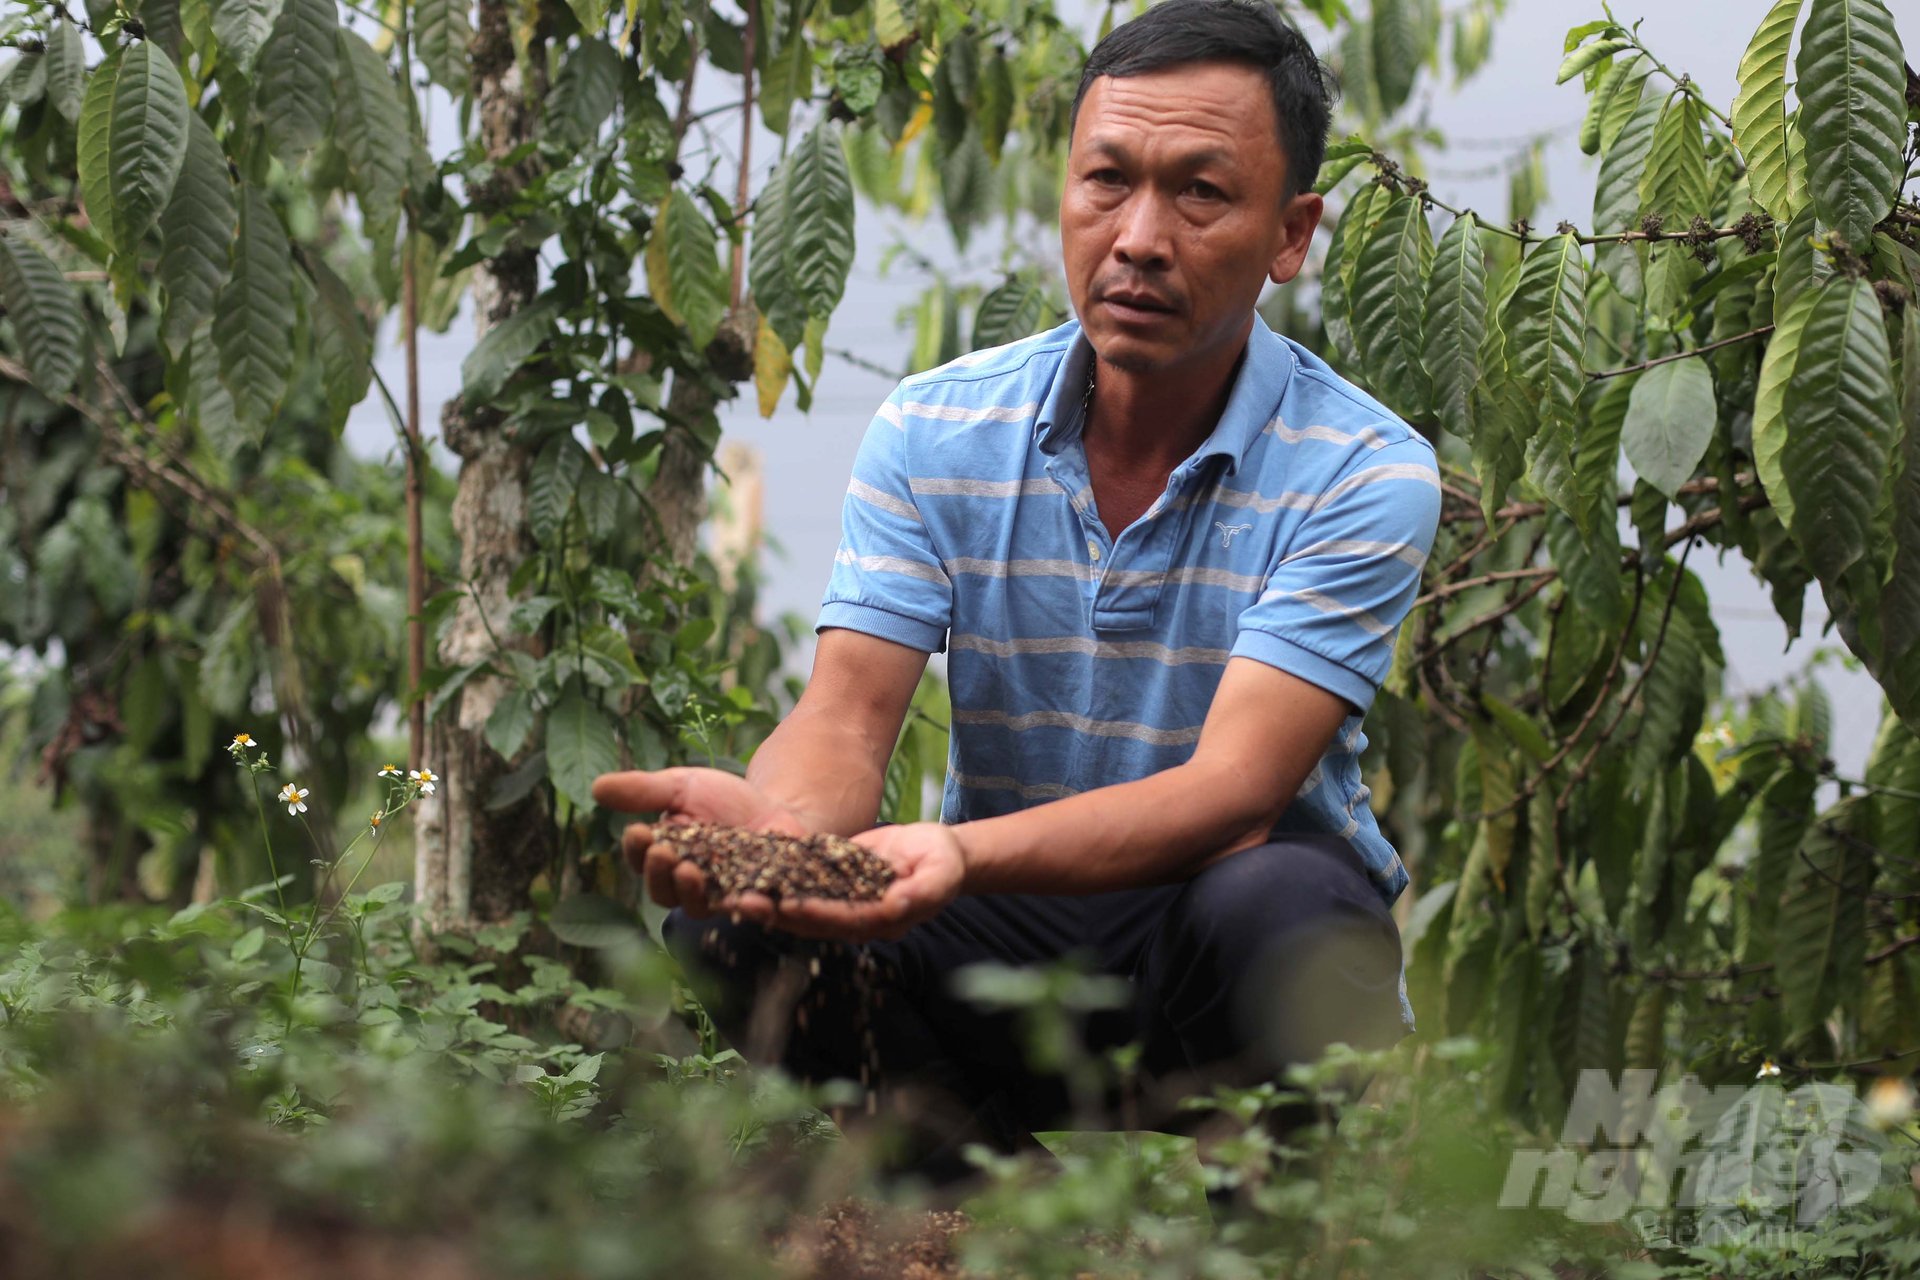 Gia đình ông Trần Mai Bình sử dụng các loại phân hữu cơ, kết hợp nguồn phân tự ủ từ vỏ cà phê để bón cho cây trồng. Ảnh: Minh Hậu.